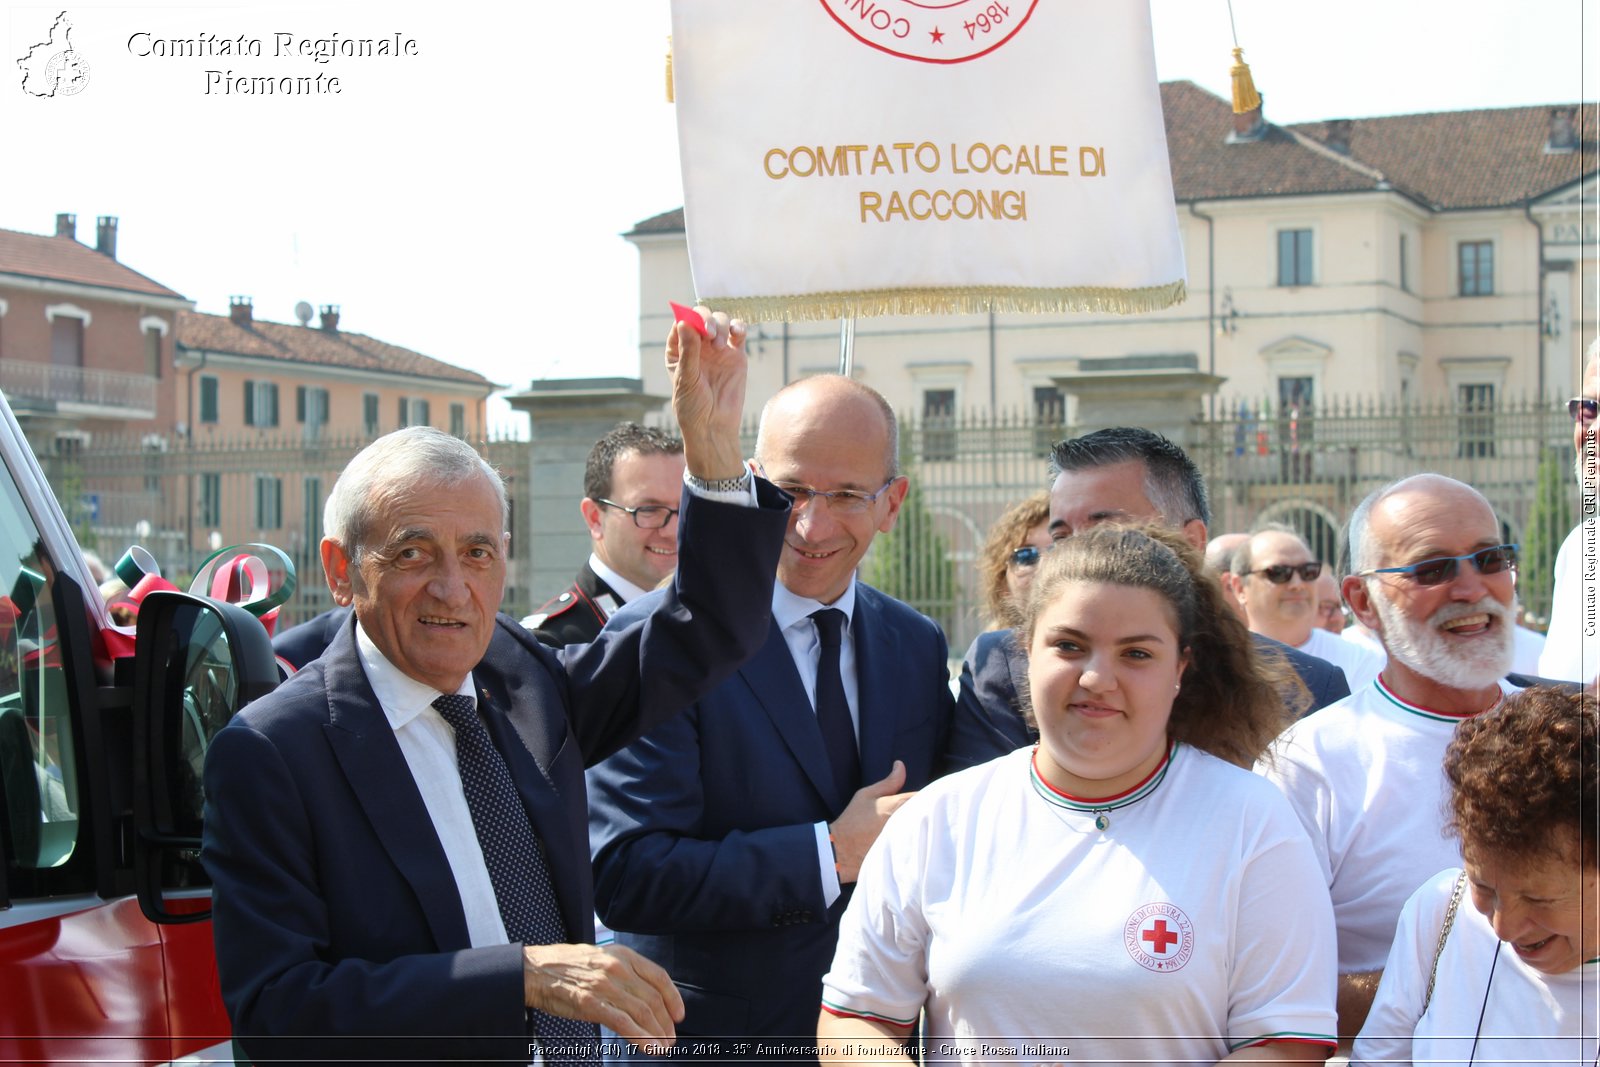 Racconigi (CN) 17 Giugno 2018 - 35 Anniversario di fondazione - Croce Rossa Italiana - Comitato Regionale del Piemonte